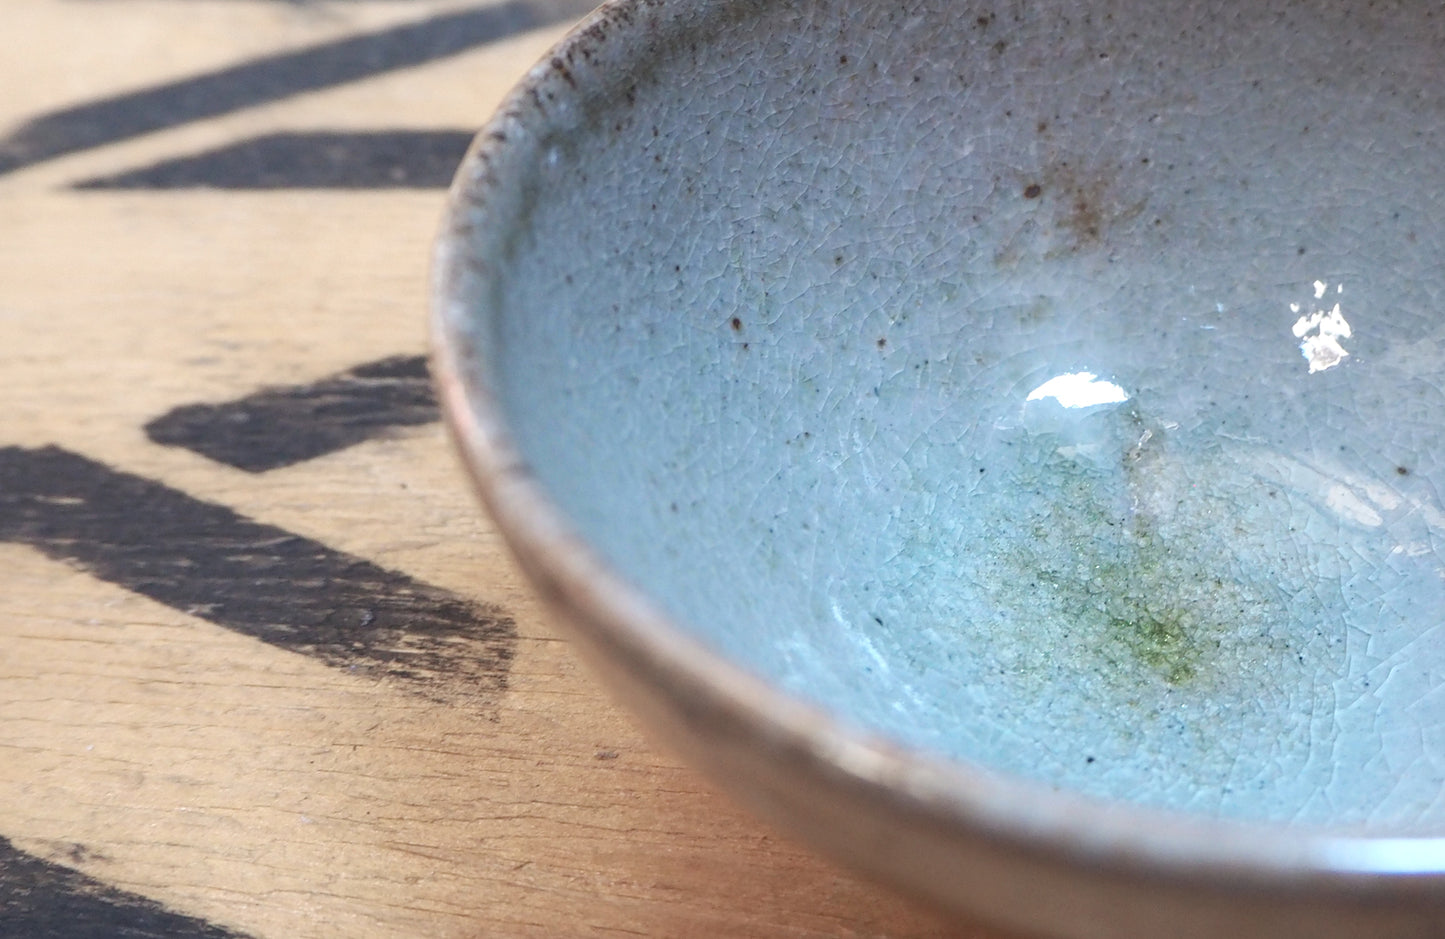 Low Shino Tea Bowl by Popalini & Jezando